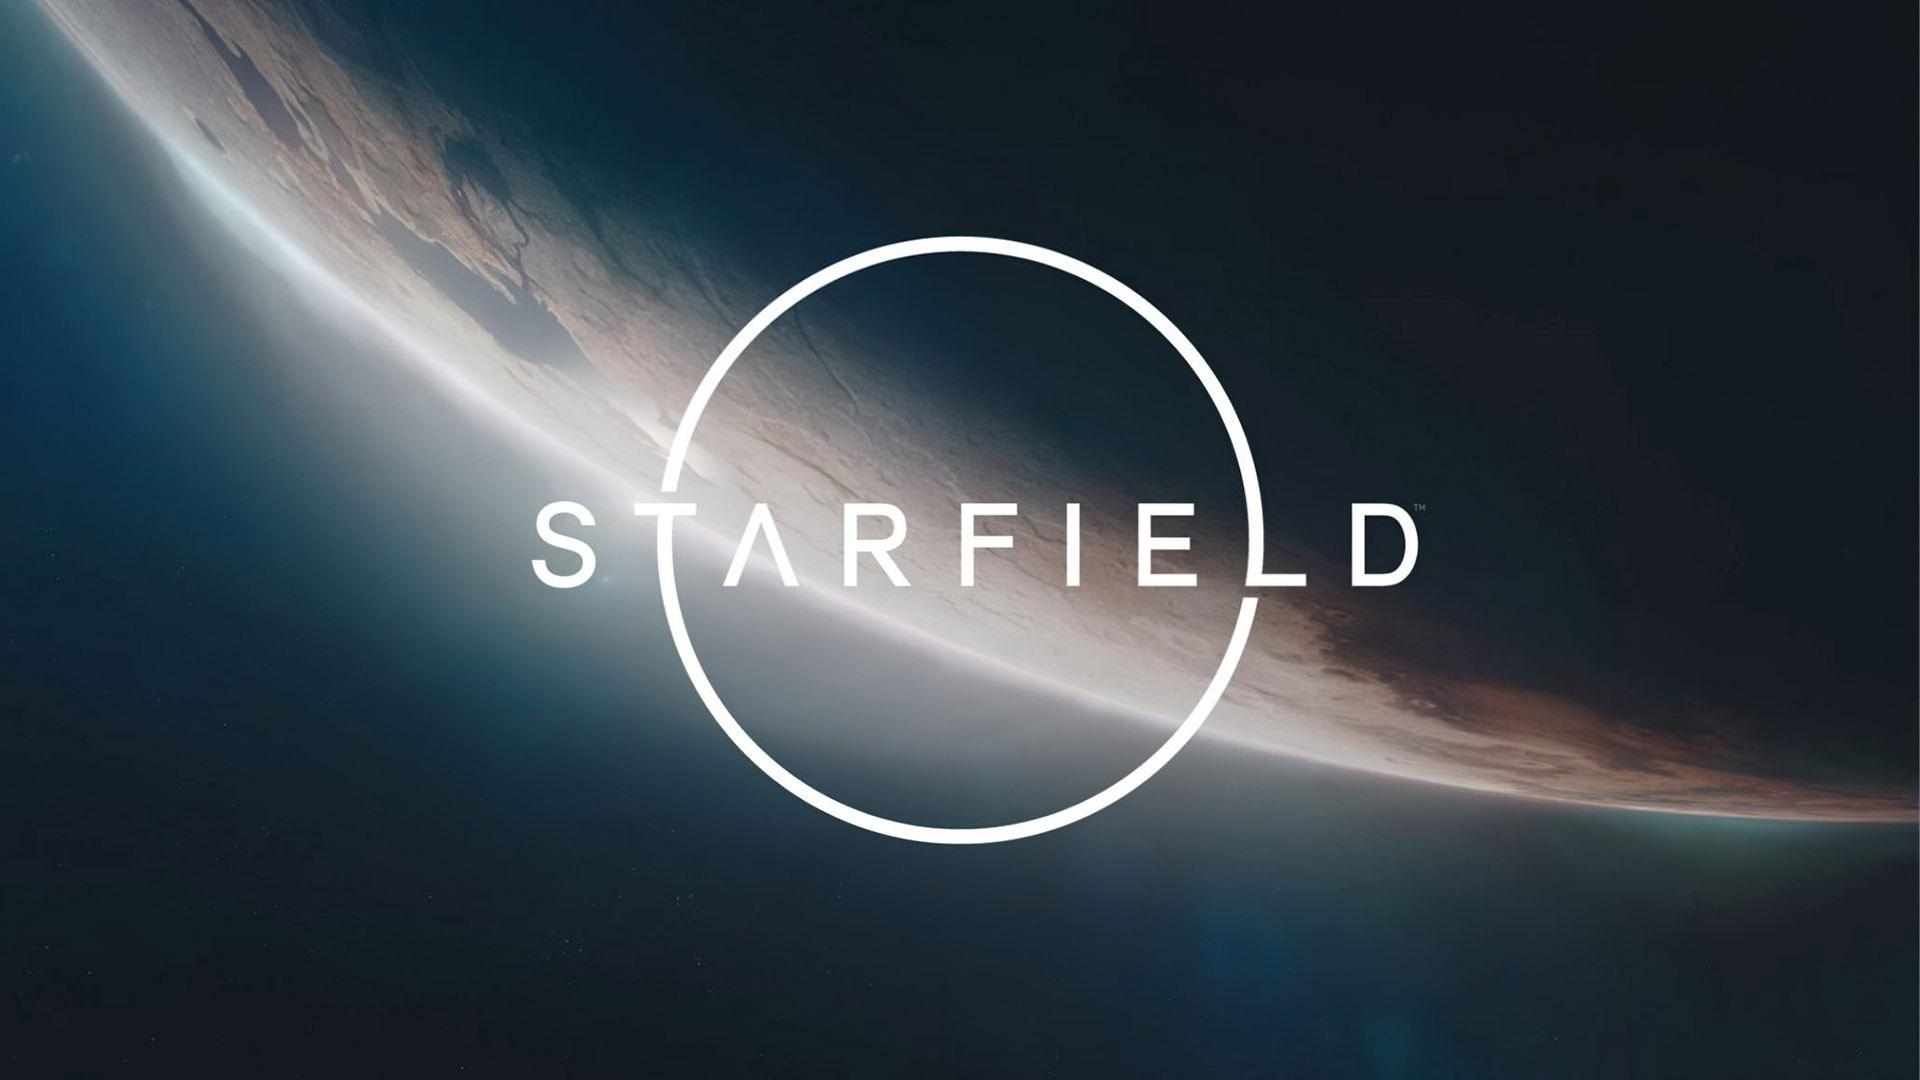 تصویر فاش شده Starfield با محوریت یک ایستگاه فضایی